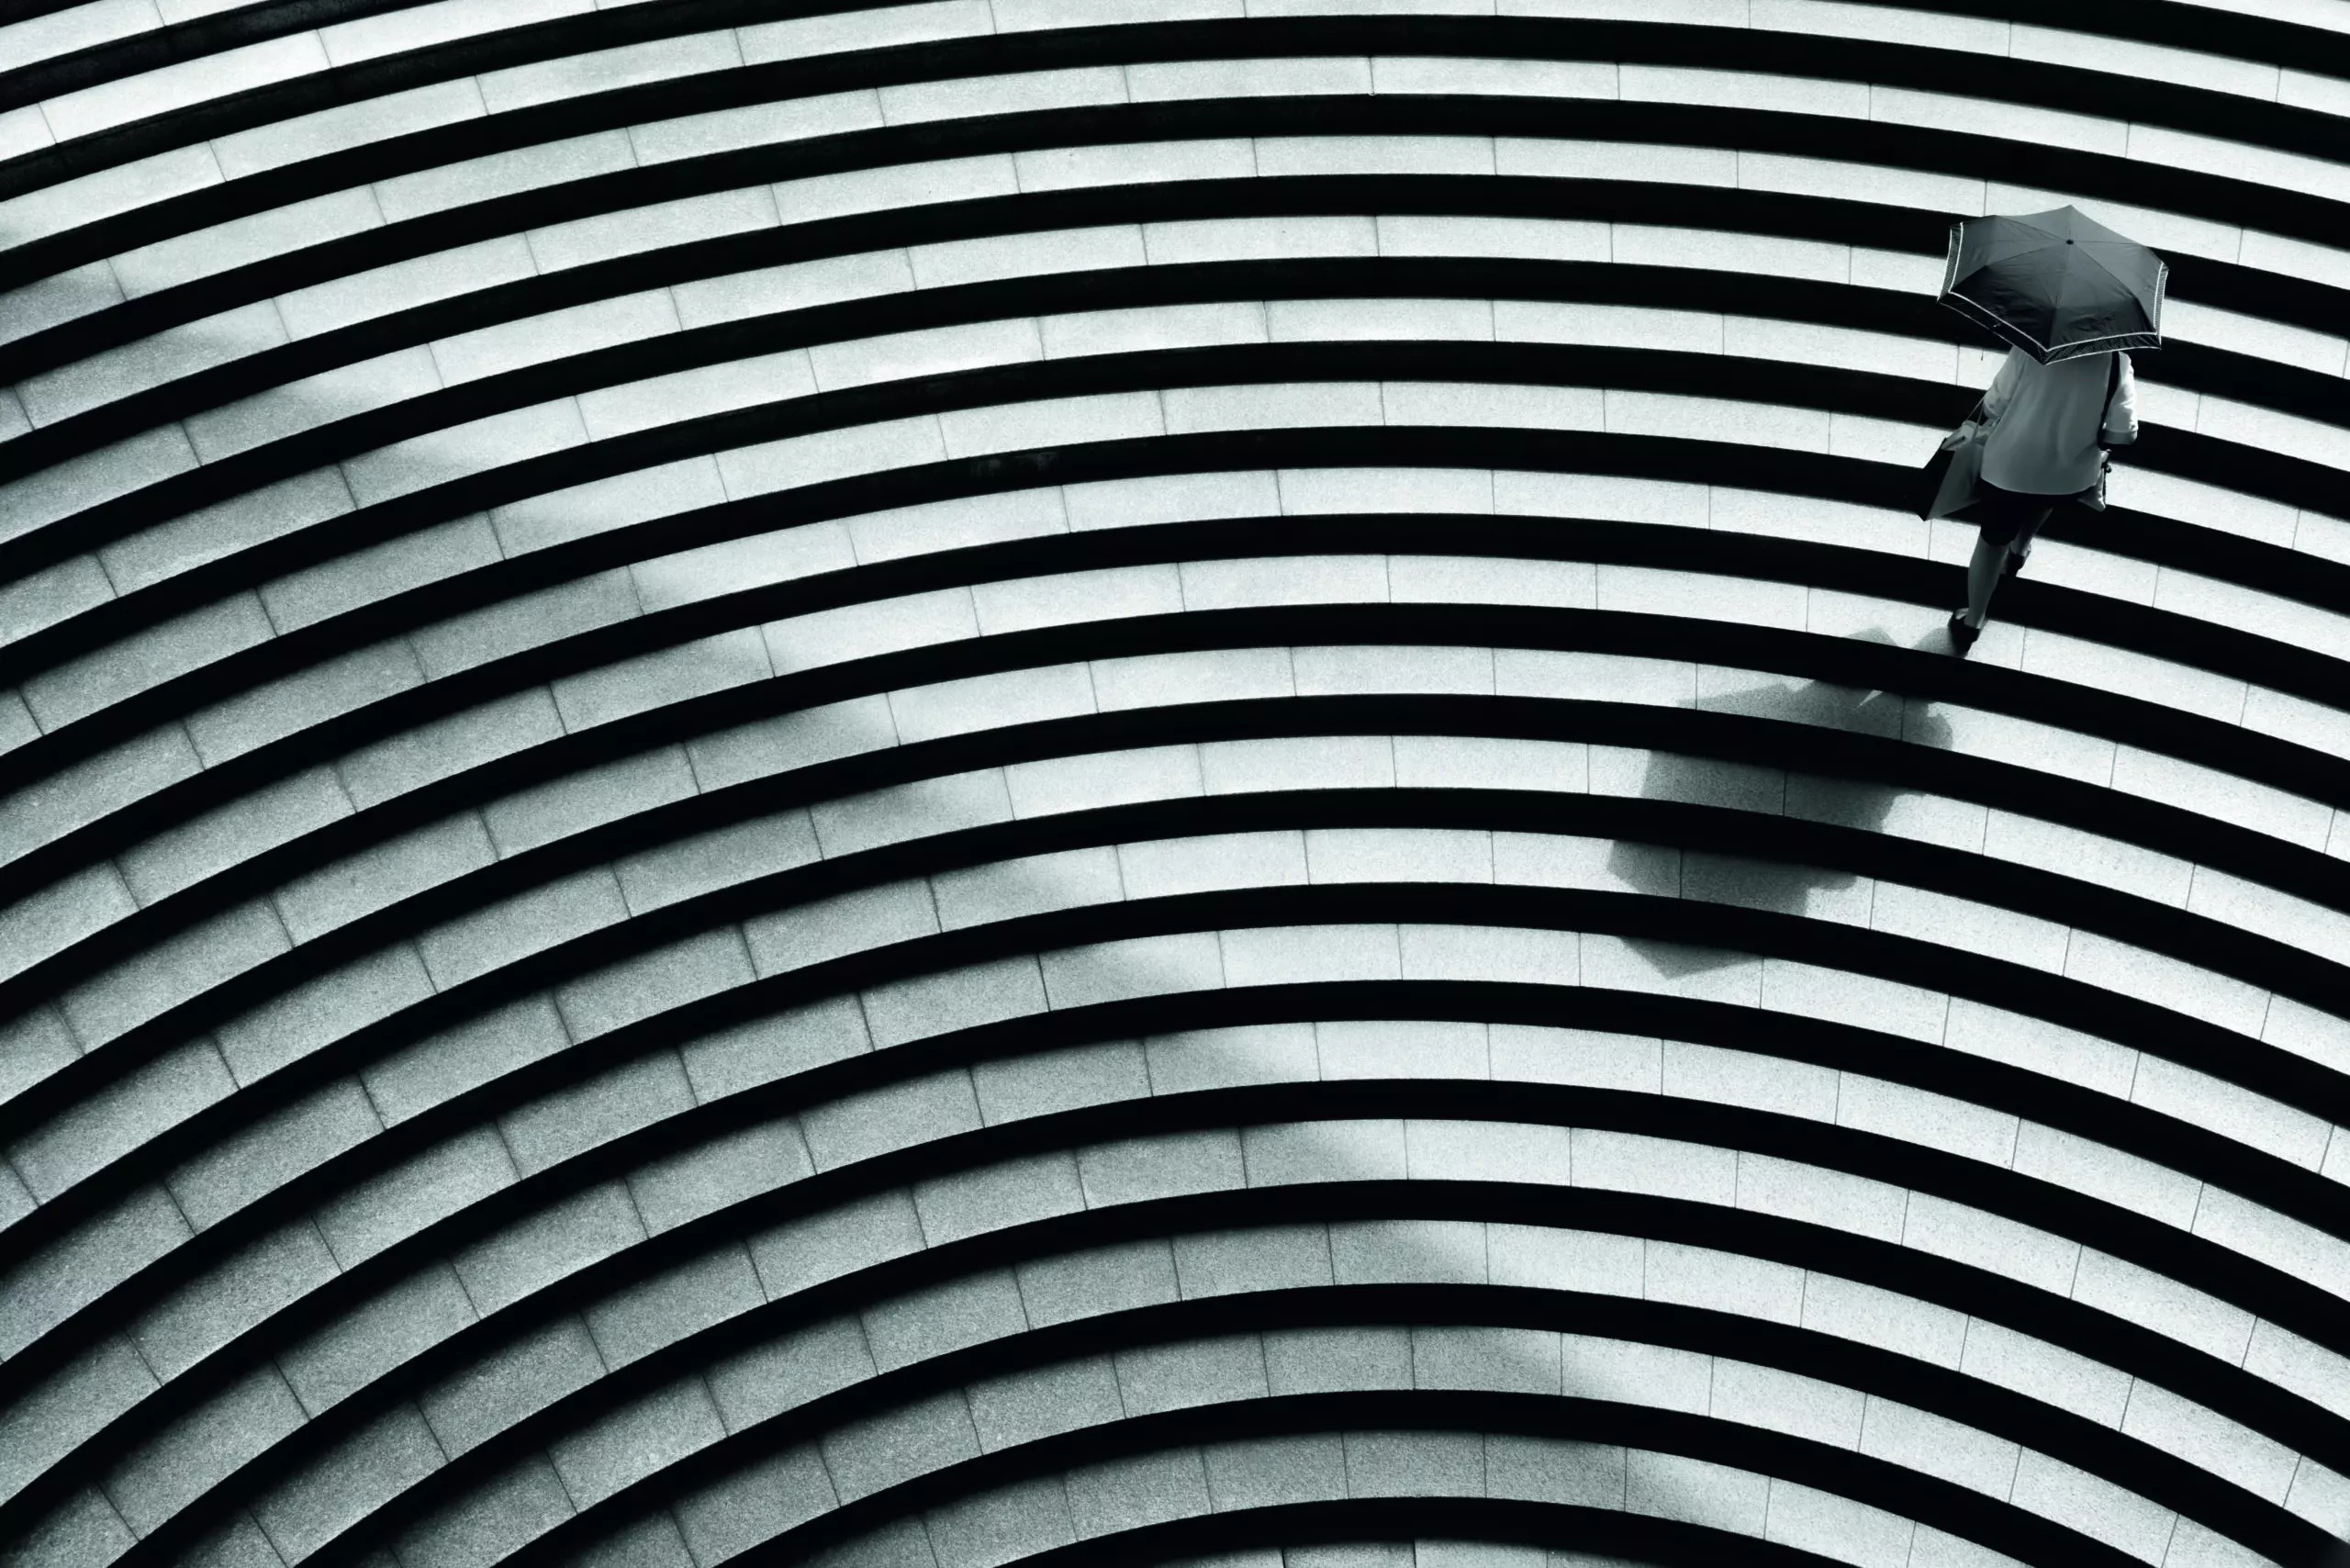 Wandbild (5083) sector by Hiroharu Matsumoto präsentiert: Menschen,Kreatives,Details und Strukturen,Architektur,Abstrakt,Sonstige Architektur,Treppe,Frauen,Humor,Architekturdetails